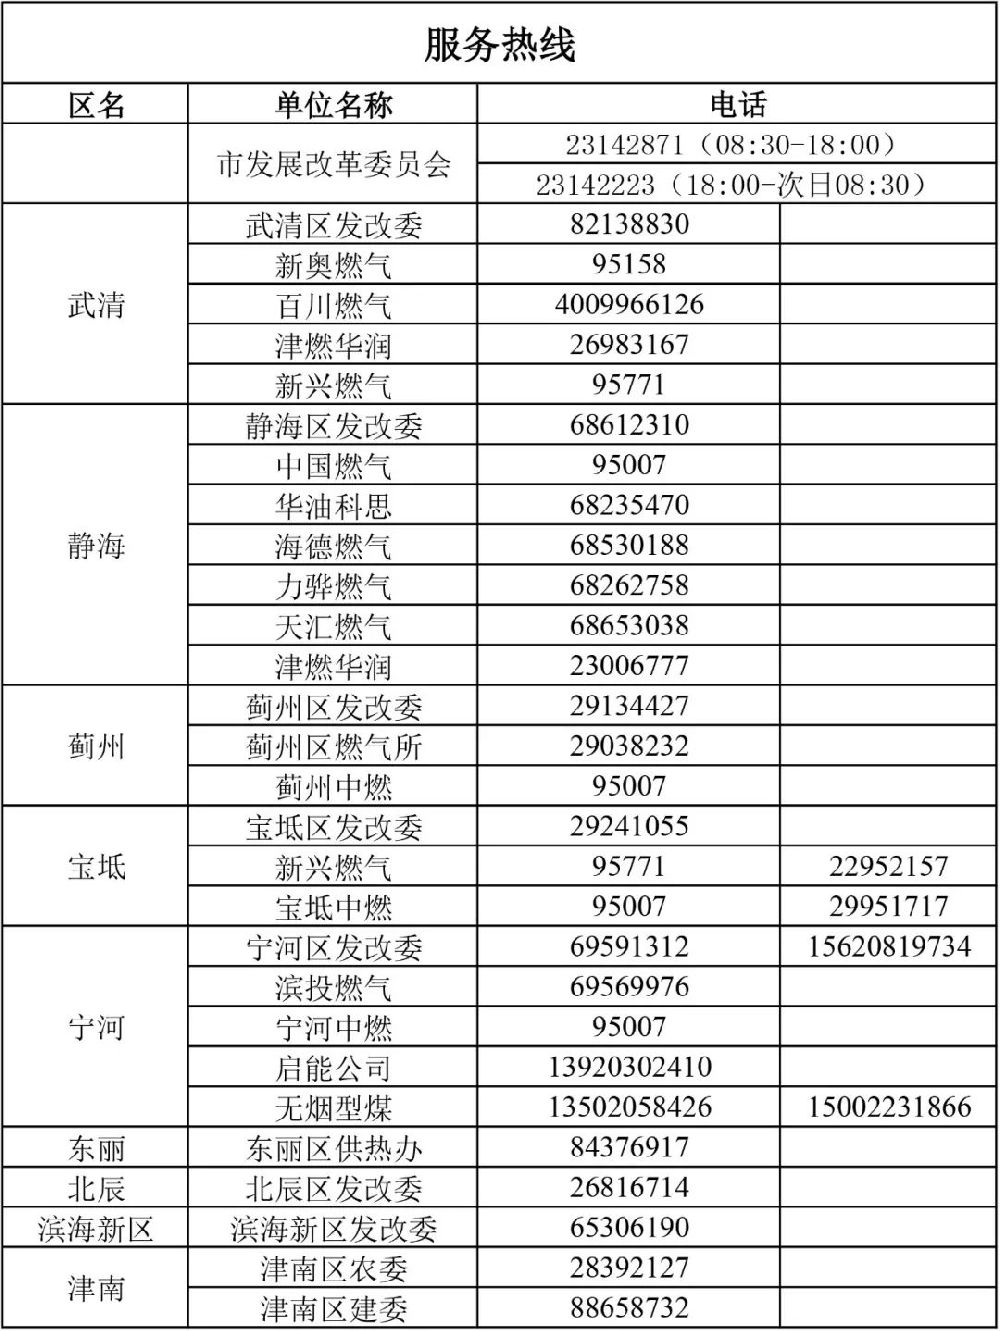 2018-2019天津冬季清洁取暖工作服务热线电话